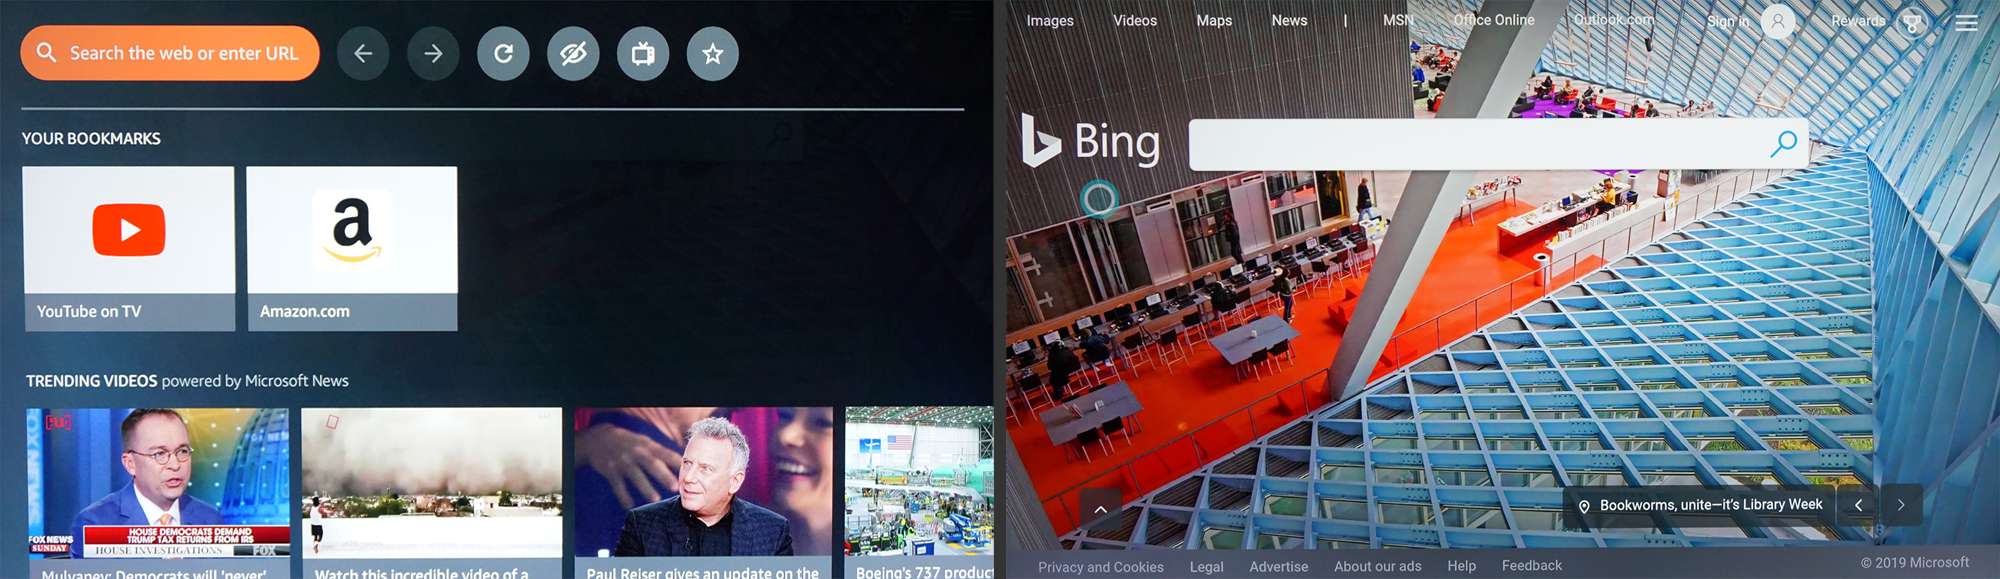 Fire TV - Hedvábný webový prohlížeč s vyhledáváním Bing